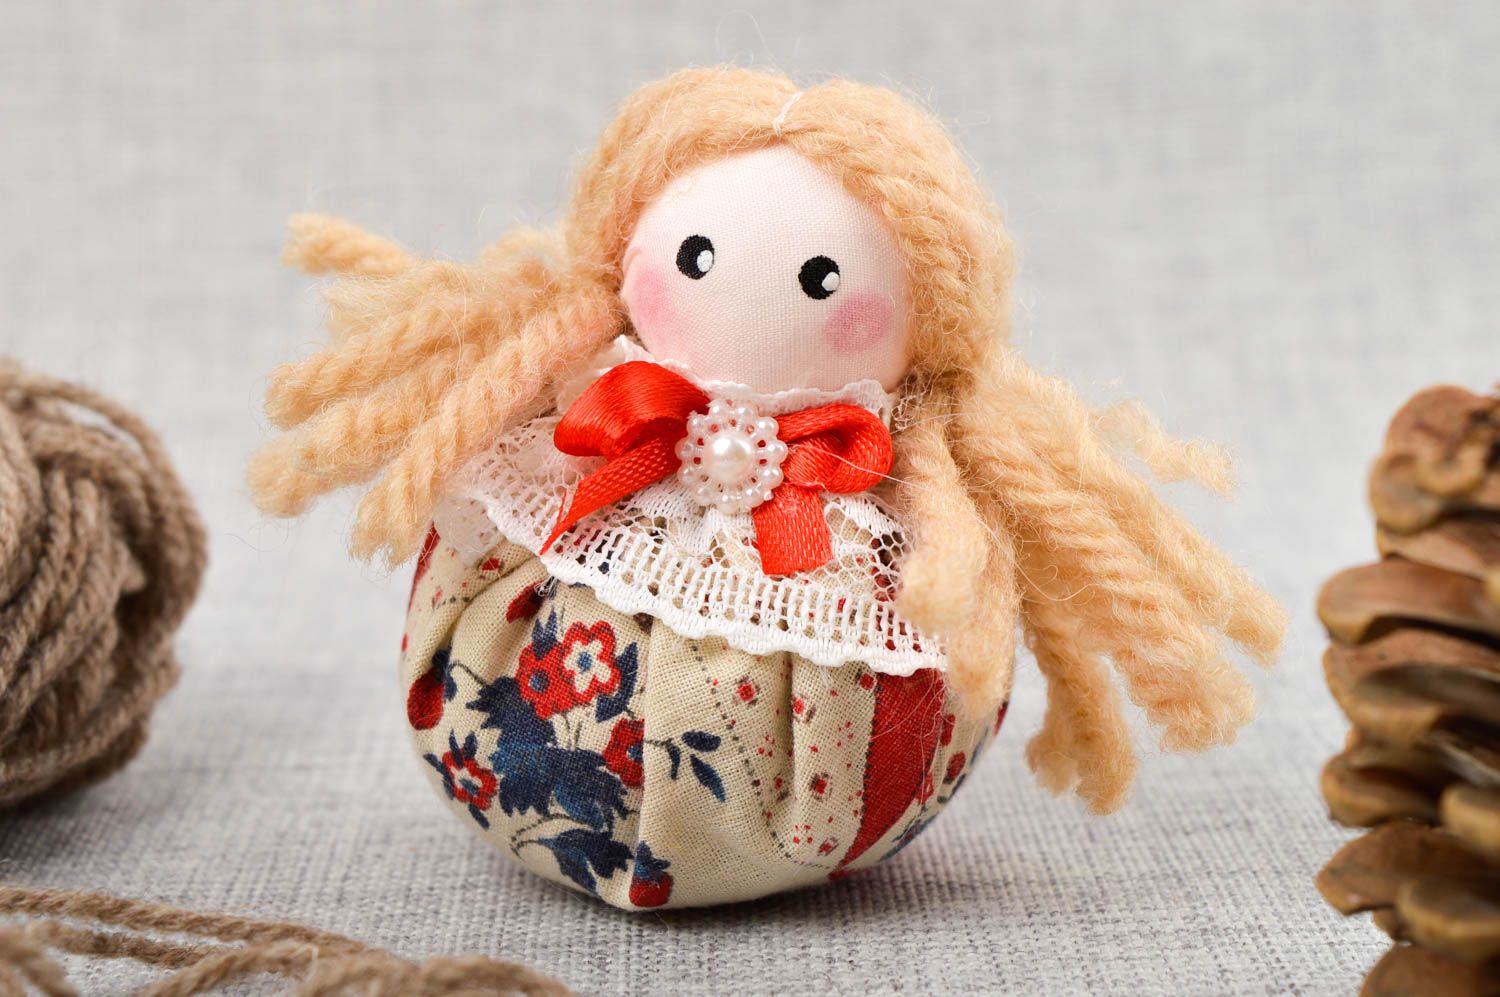 Handmade Designer Puppe mit Lavendel Duft Stoff Spielzeug schöne Puppe foto 1